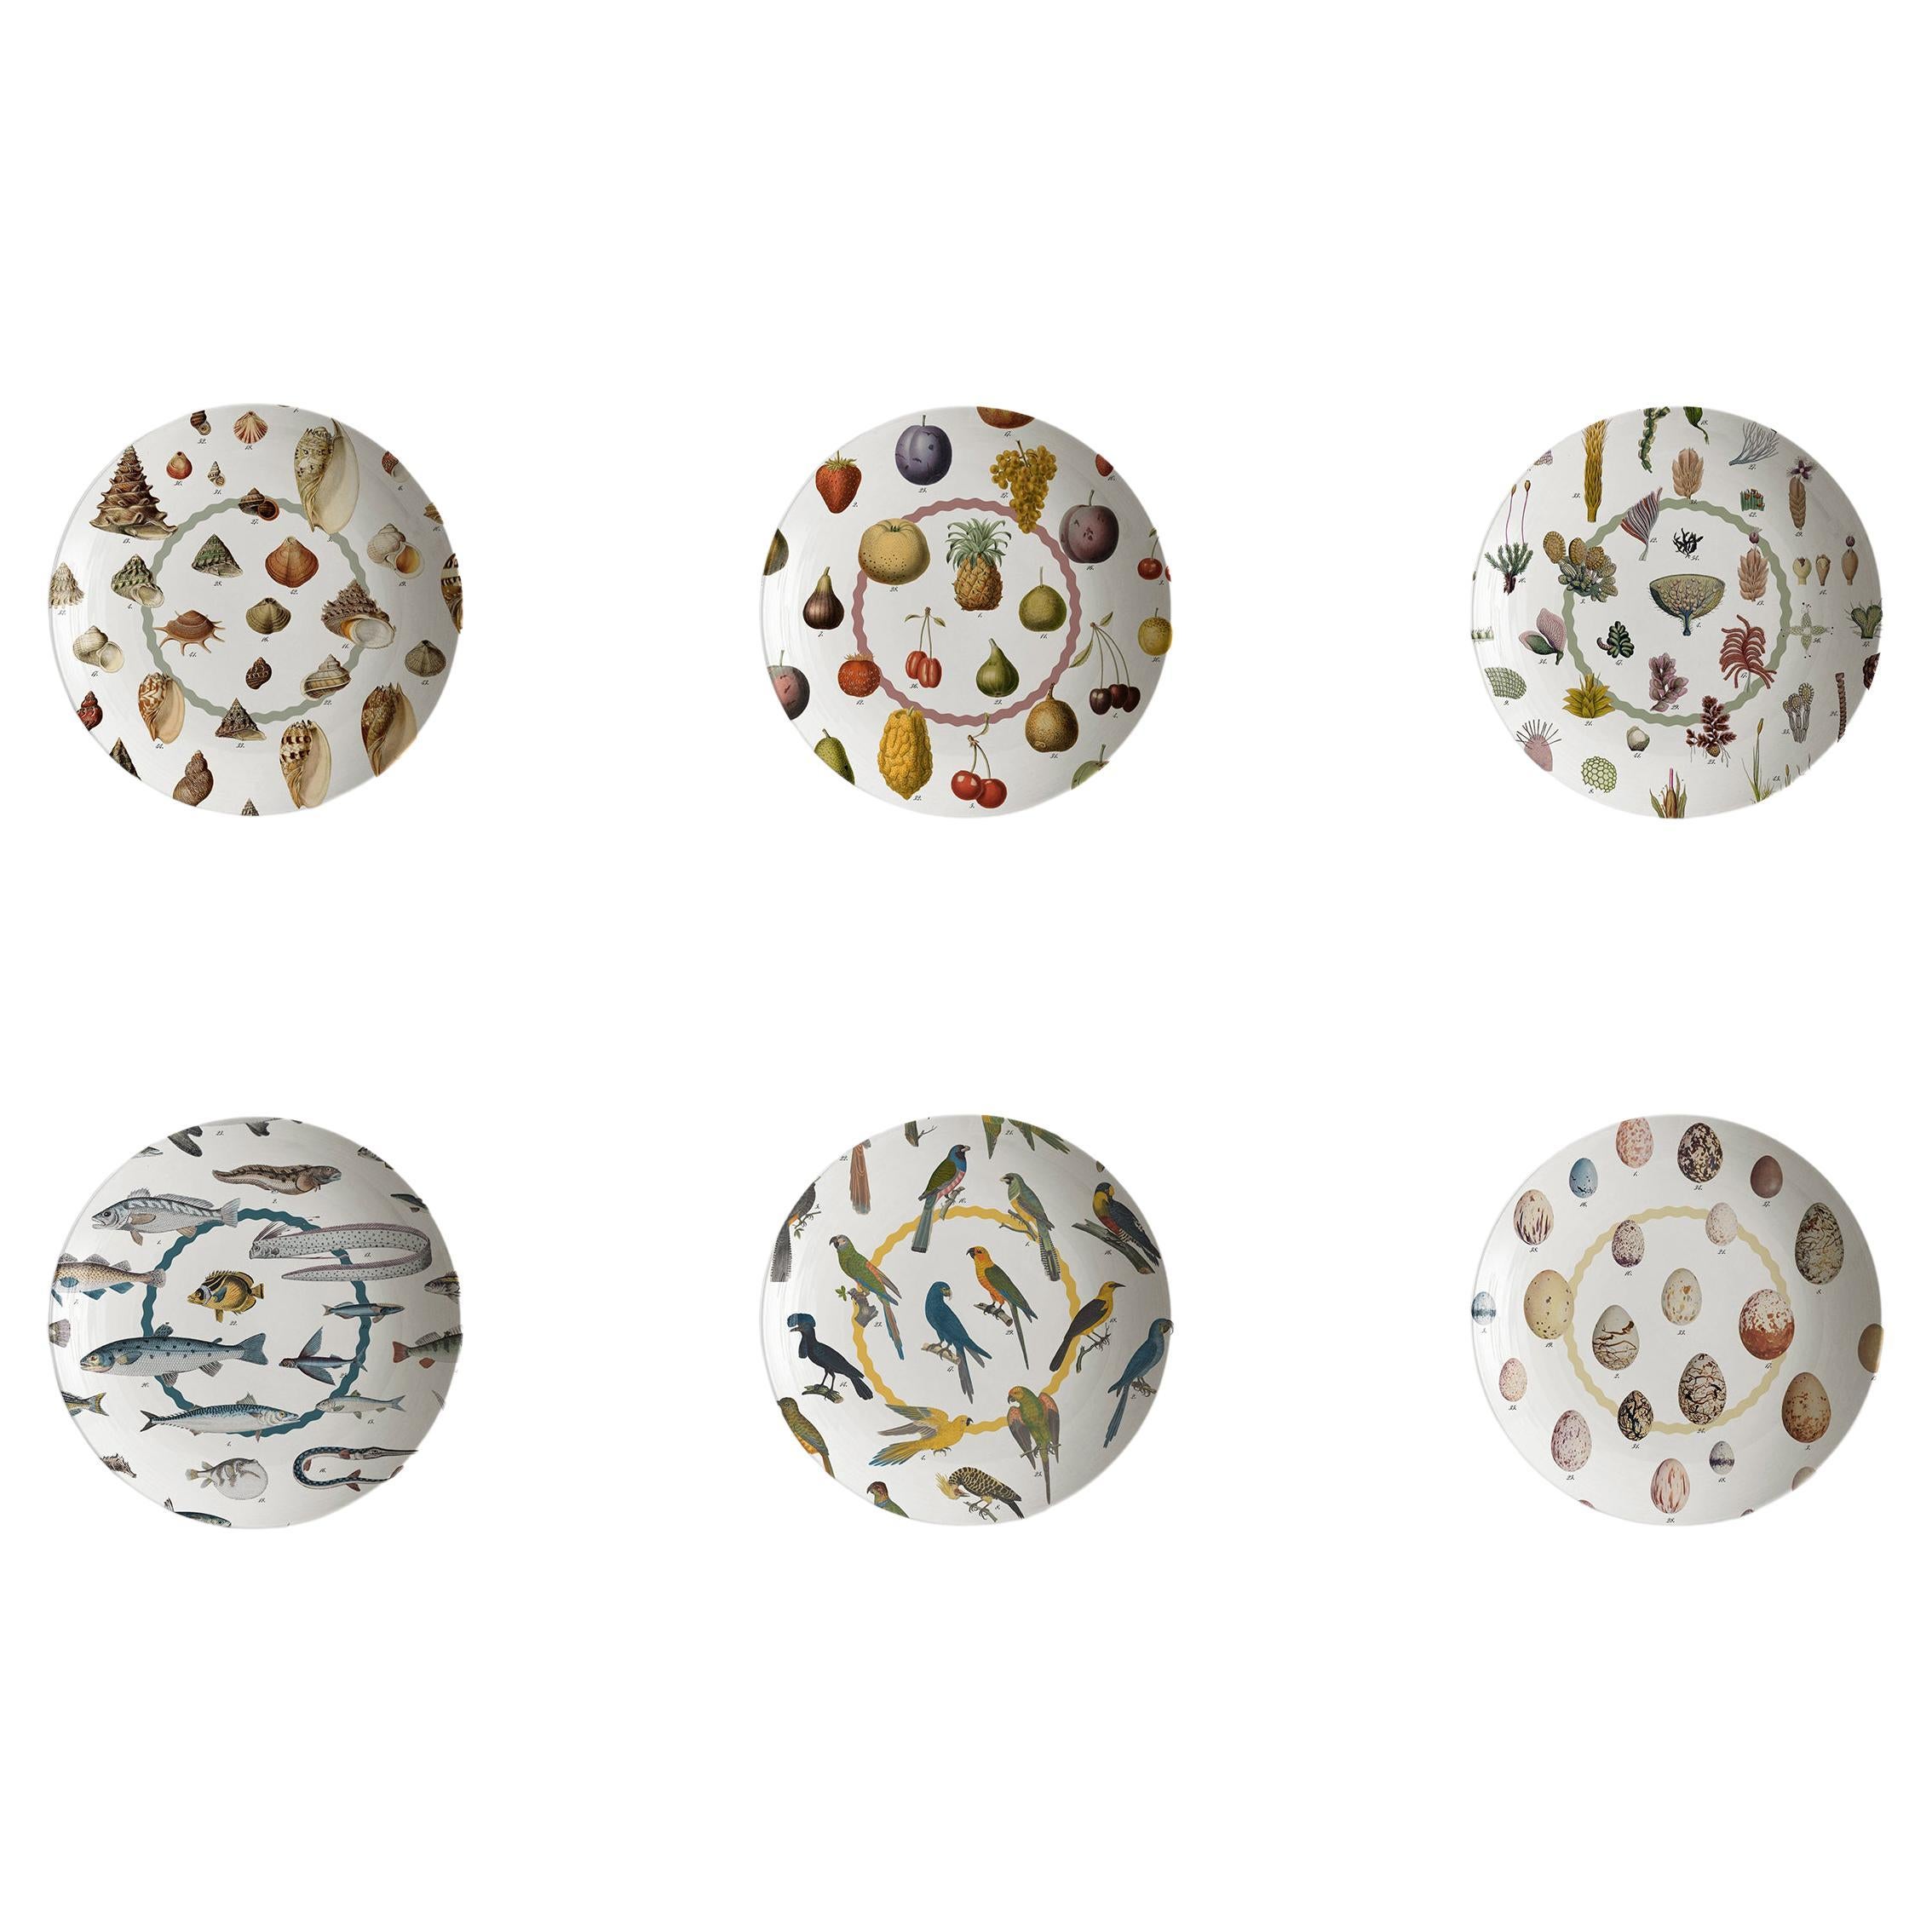 Cabinet de Curiosités, Six Contemporary Decorated Porcelain Soup Plates